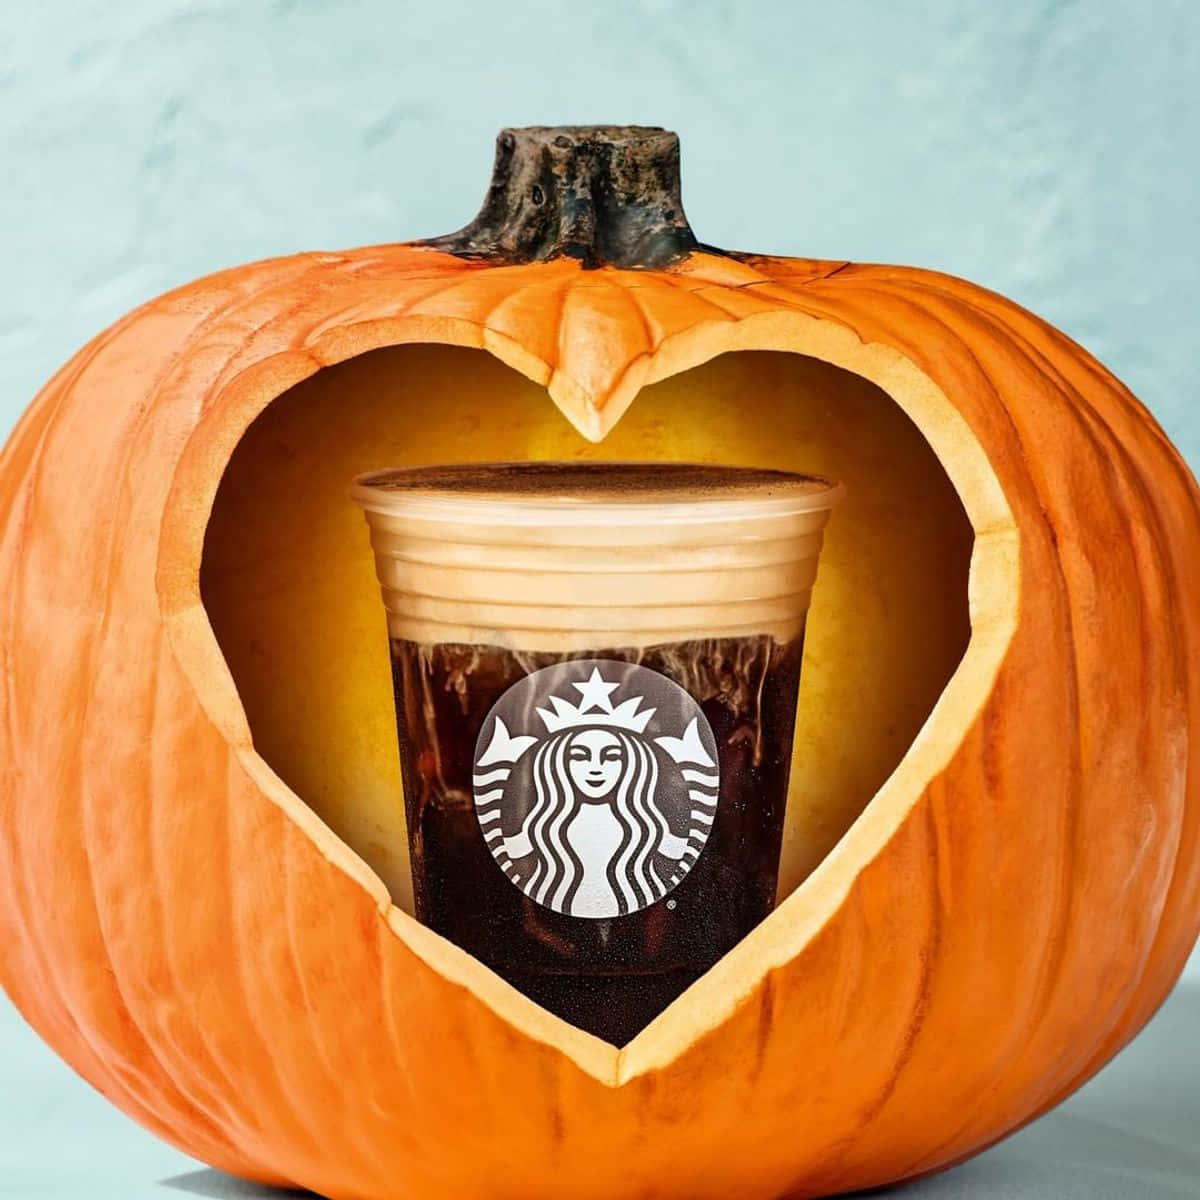 Imágenesde Tallado De Calabaza En Forma De Corazón De Starbucks.